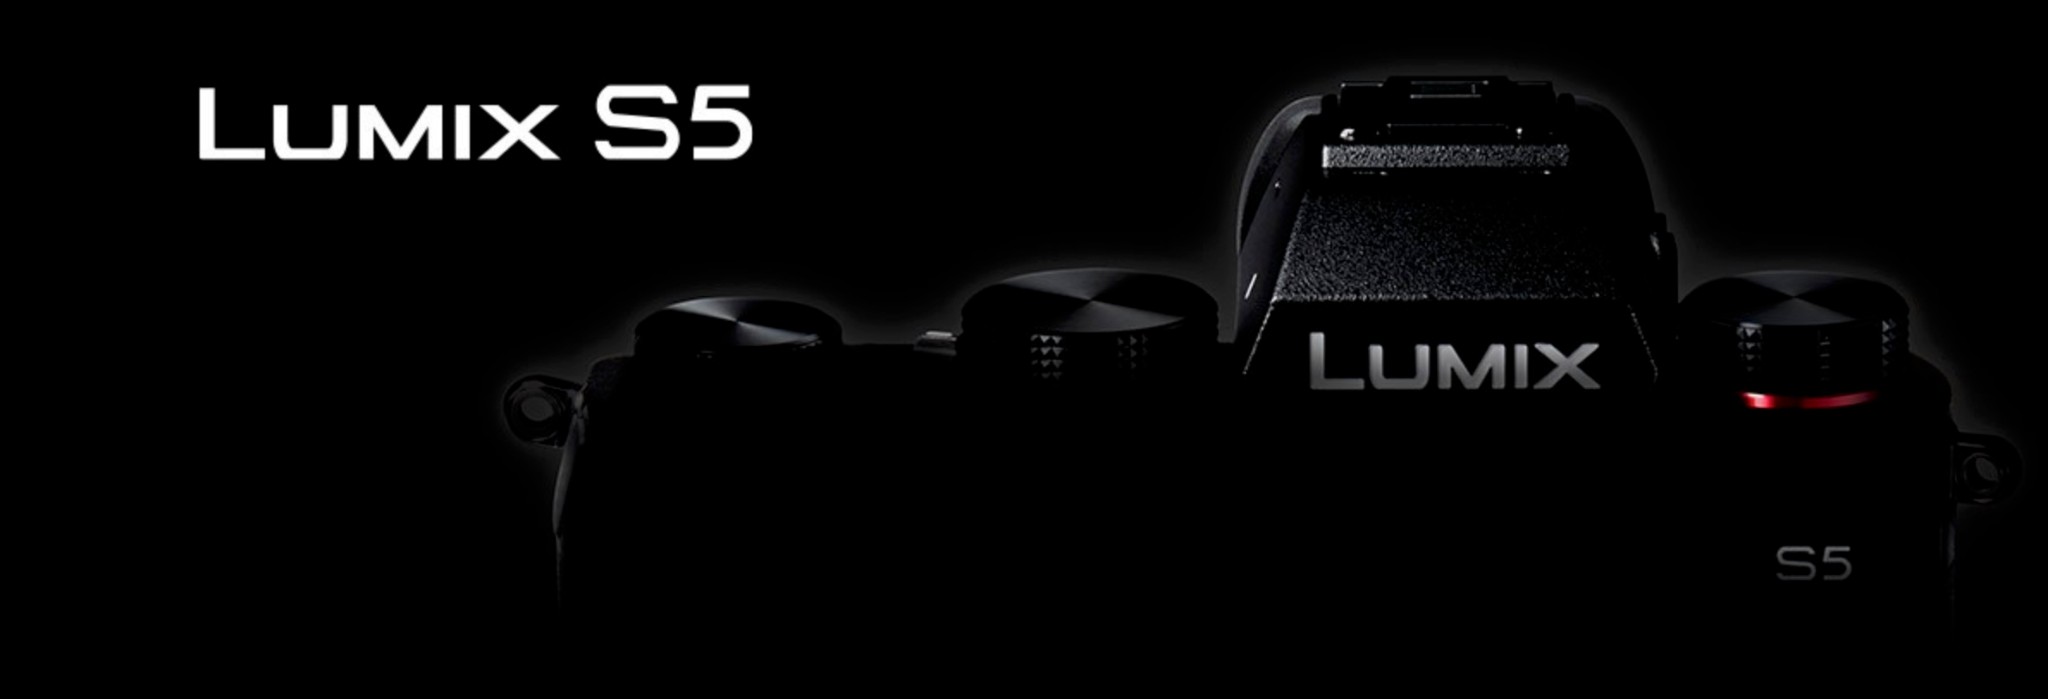 Panasonic sẽ giới thiệu máy ảnh Lumix S5 vào ngày 2/9